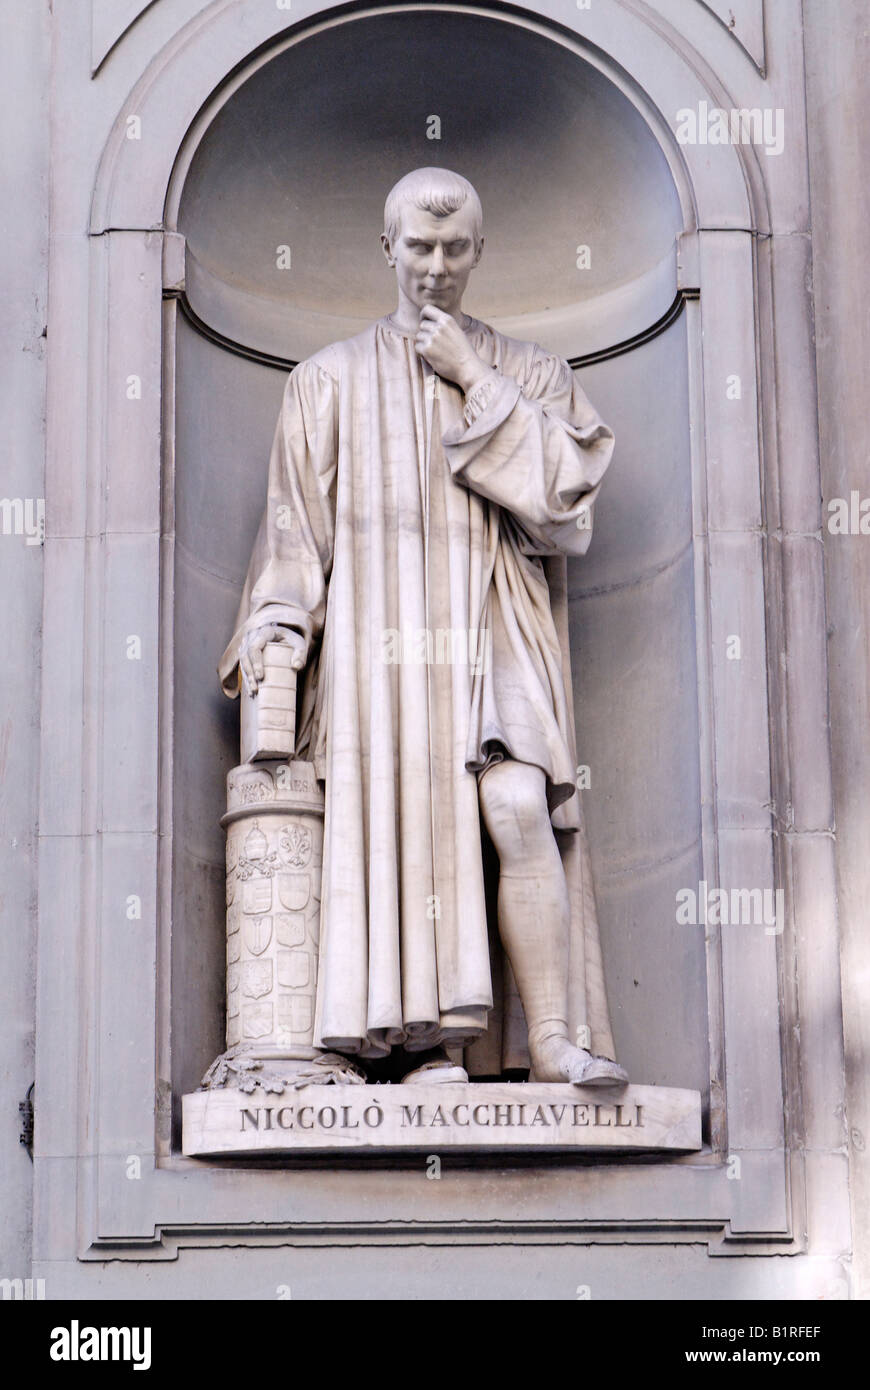 Statua di Niccolò Machiavelli, Rinascimento, presso la Galleria degli Uffizi di Firenze, Sito Patrimonio Mondiale dell'UNESCO, Toscana, Italia, Europa Foto Stock